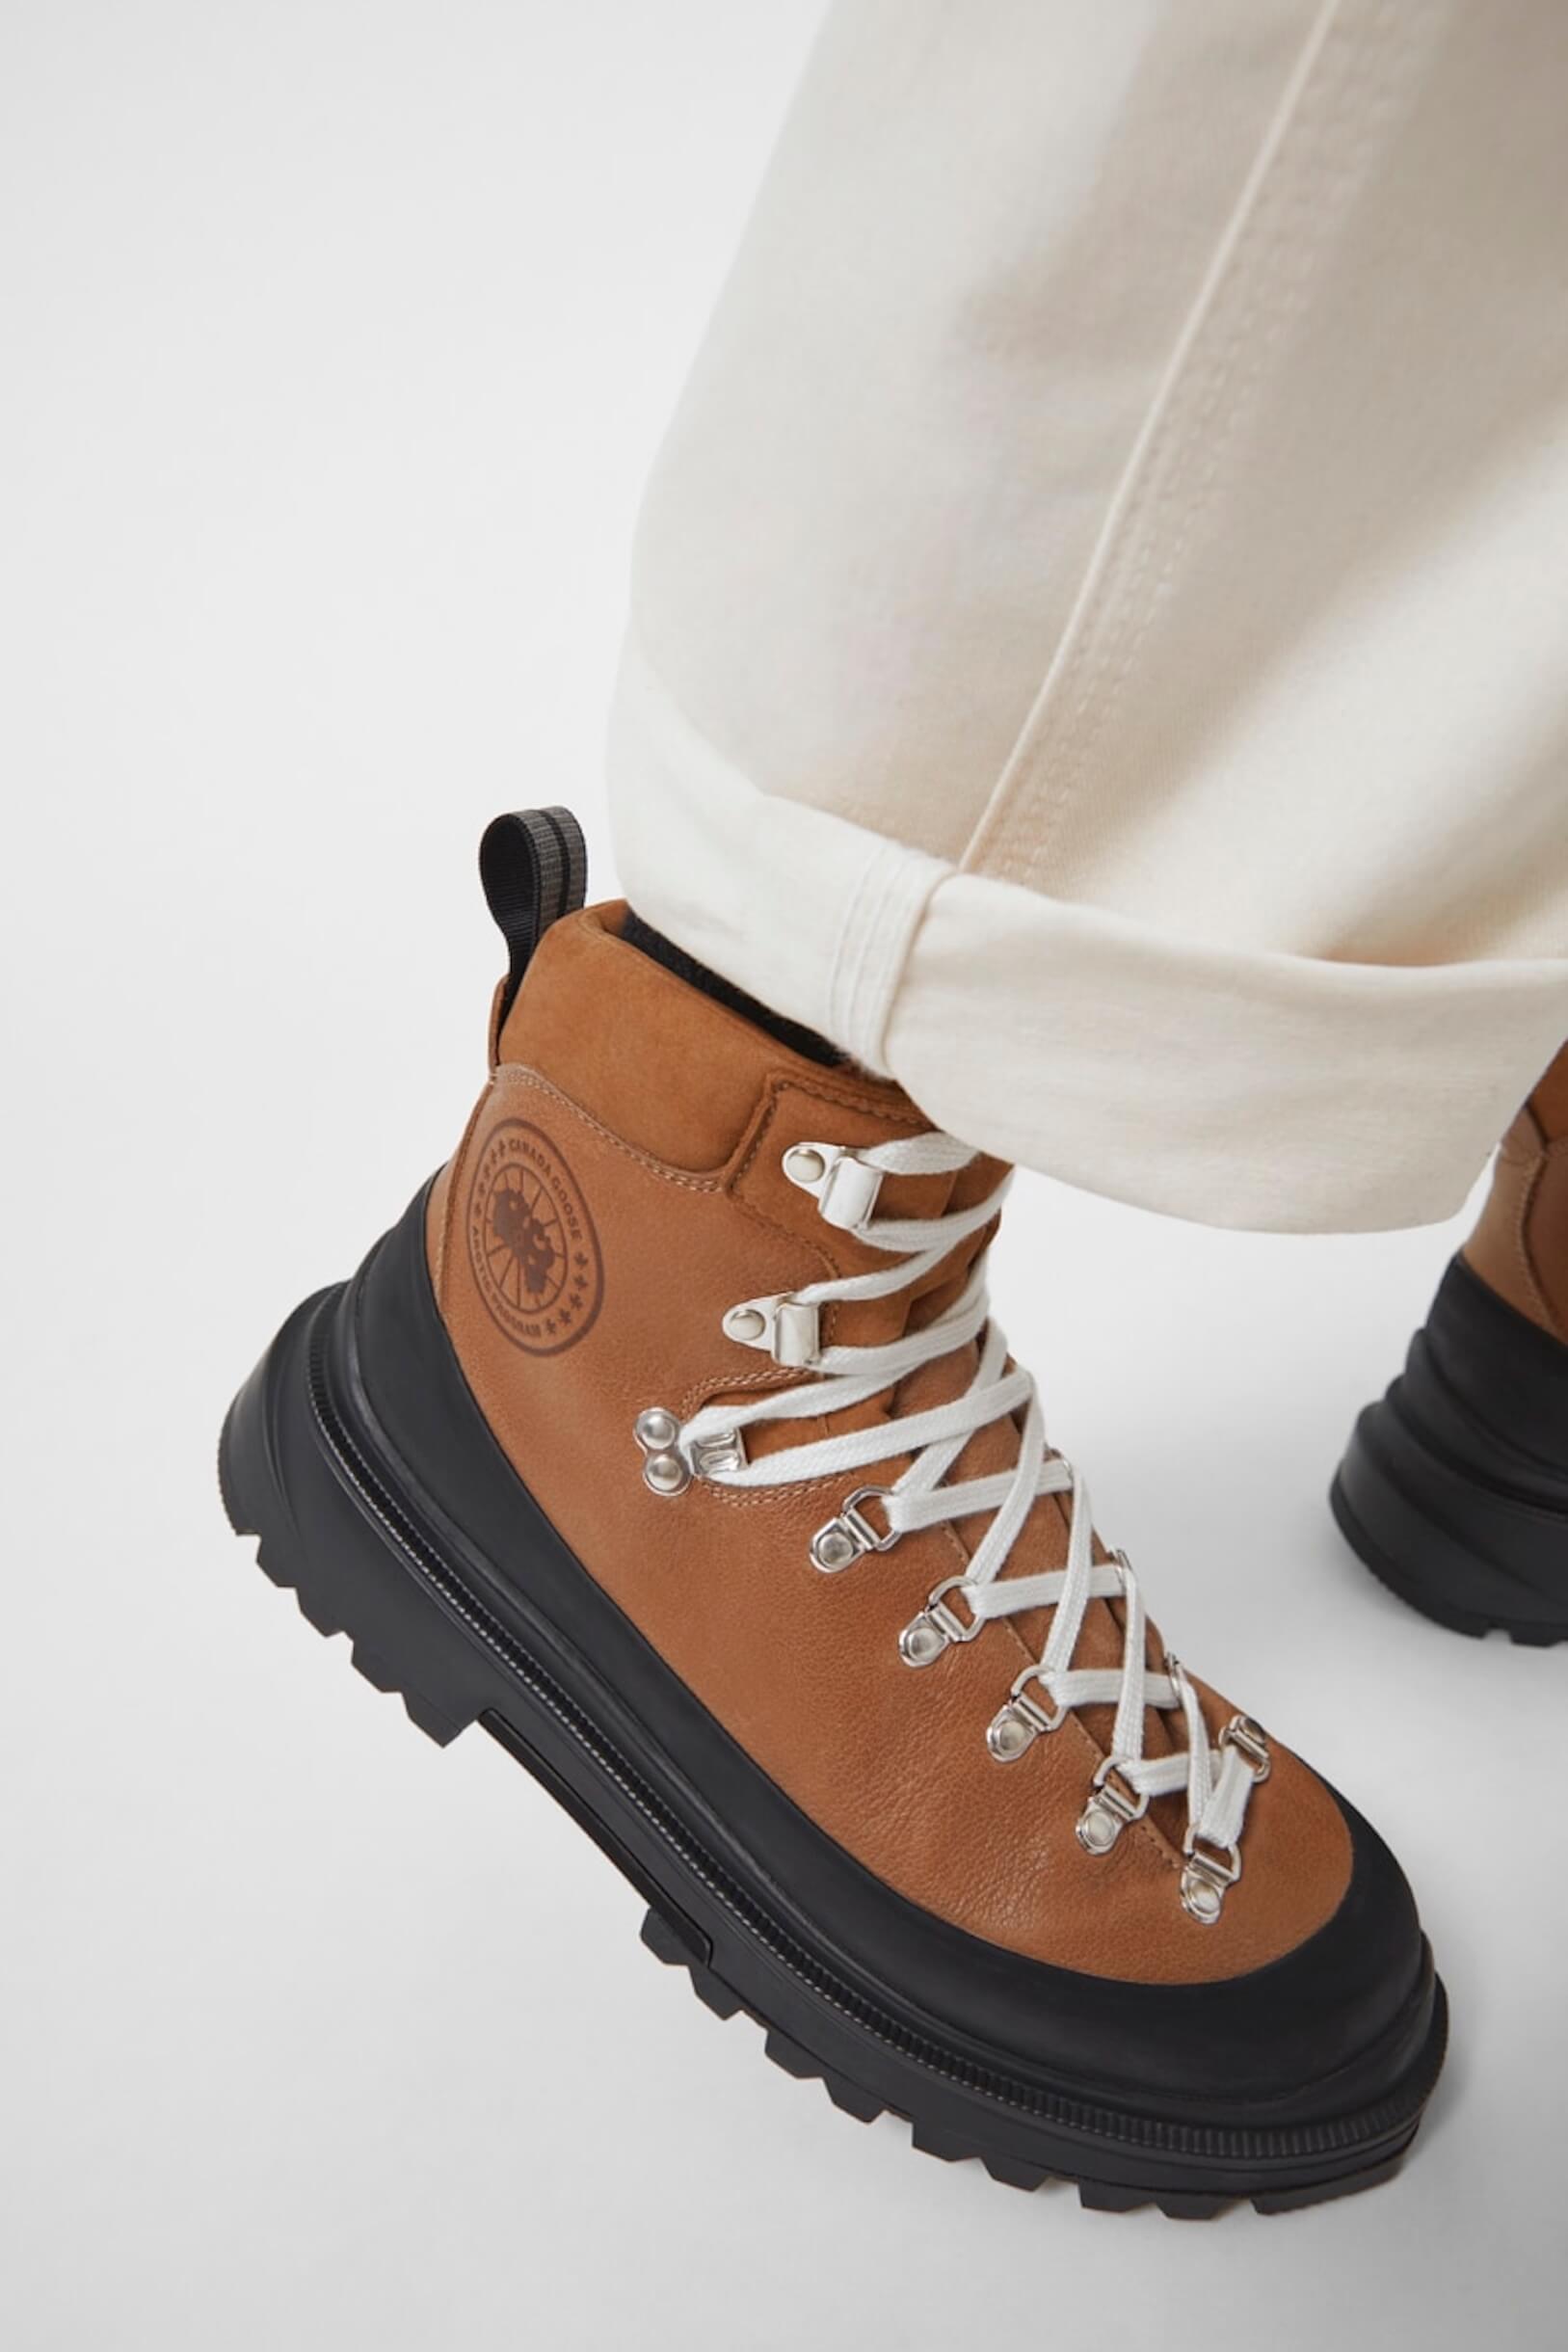 CANADA GOOSE初のフットウェア「JOURNEY BOOT」が登場！高機能・防水のブーツが発売 fashion220121_canadagoose-05